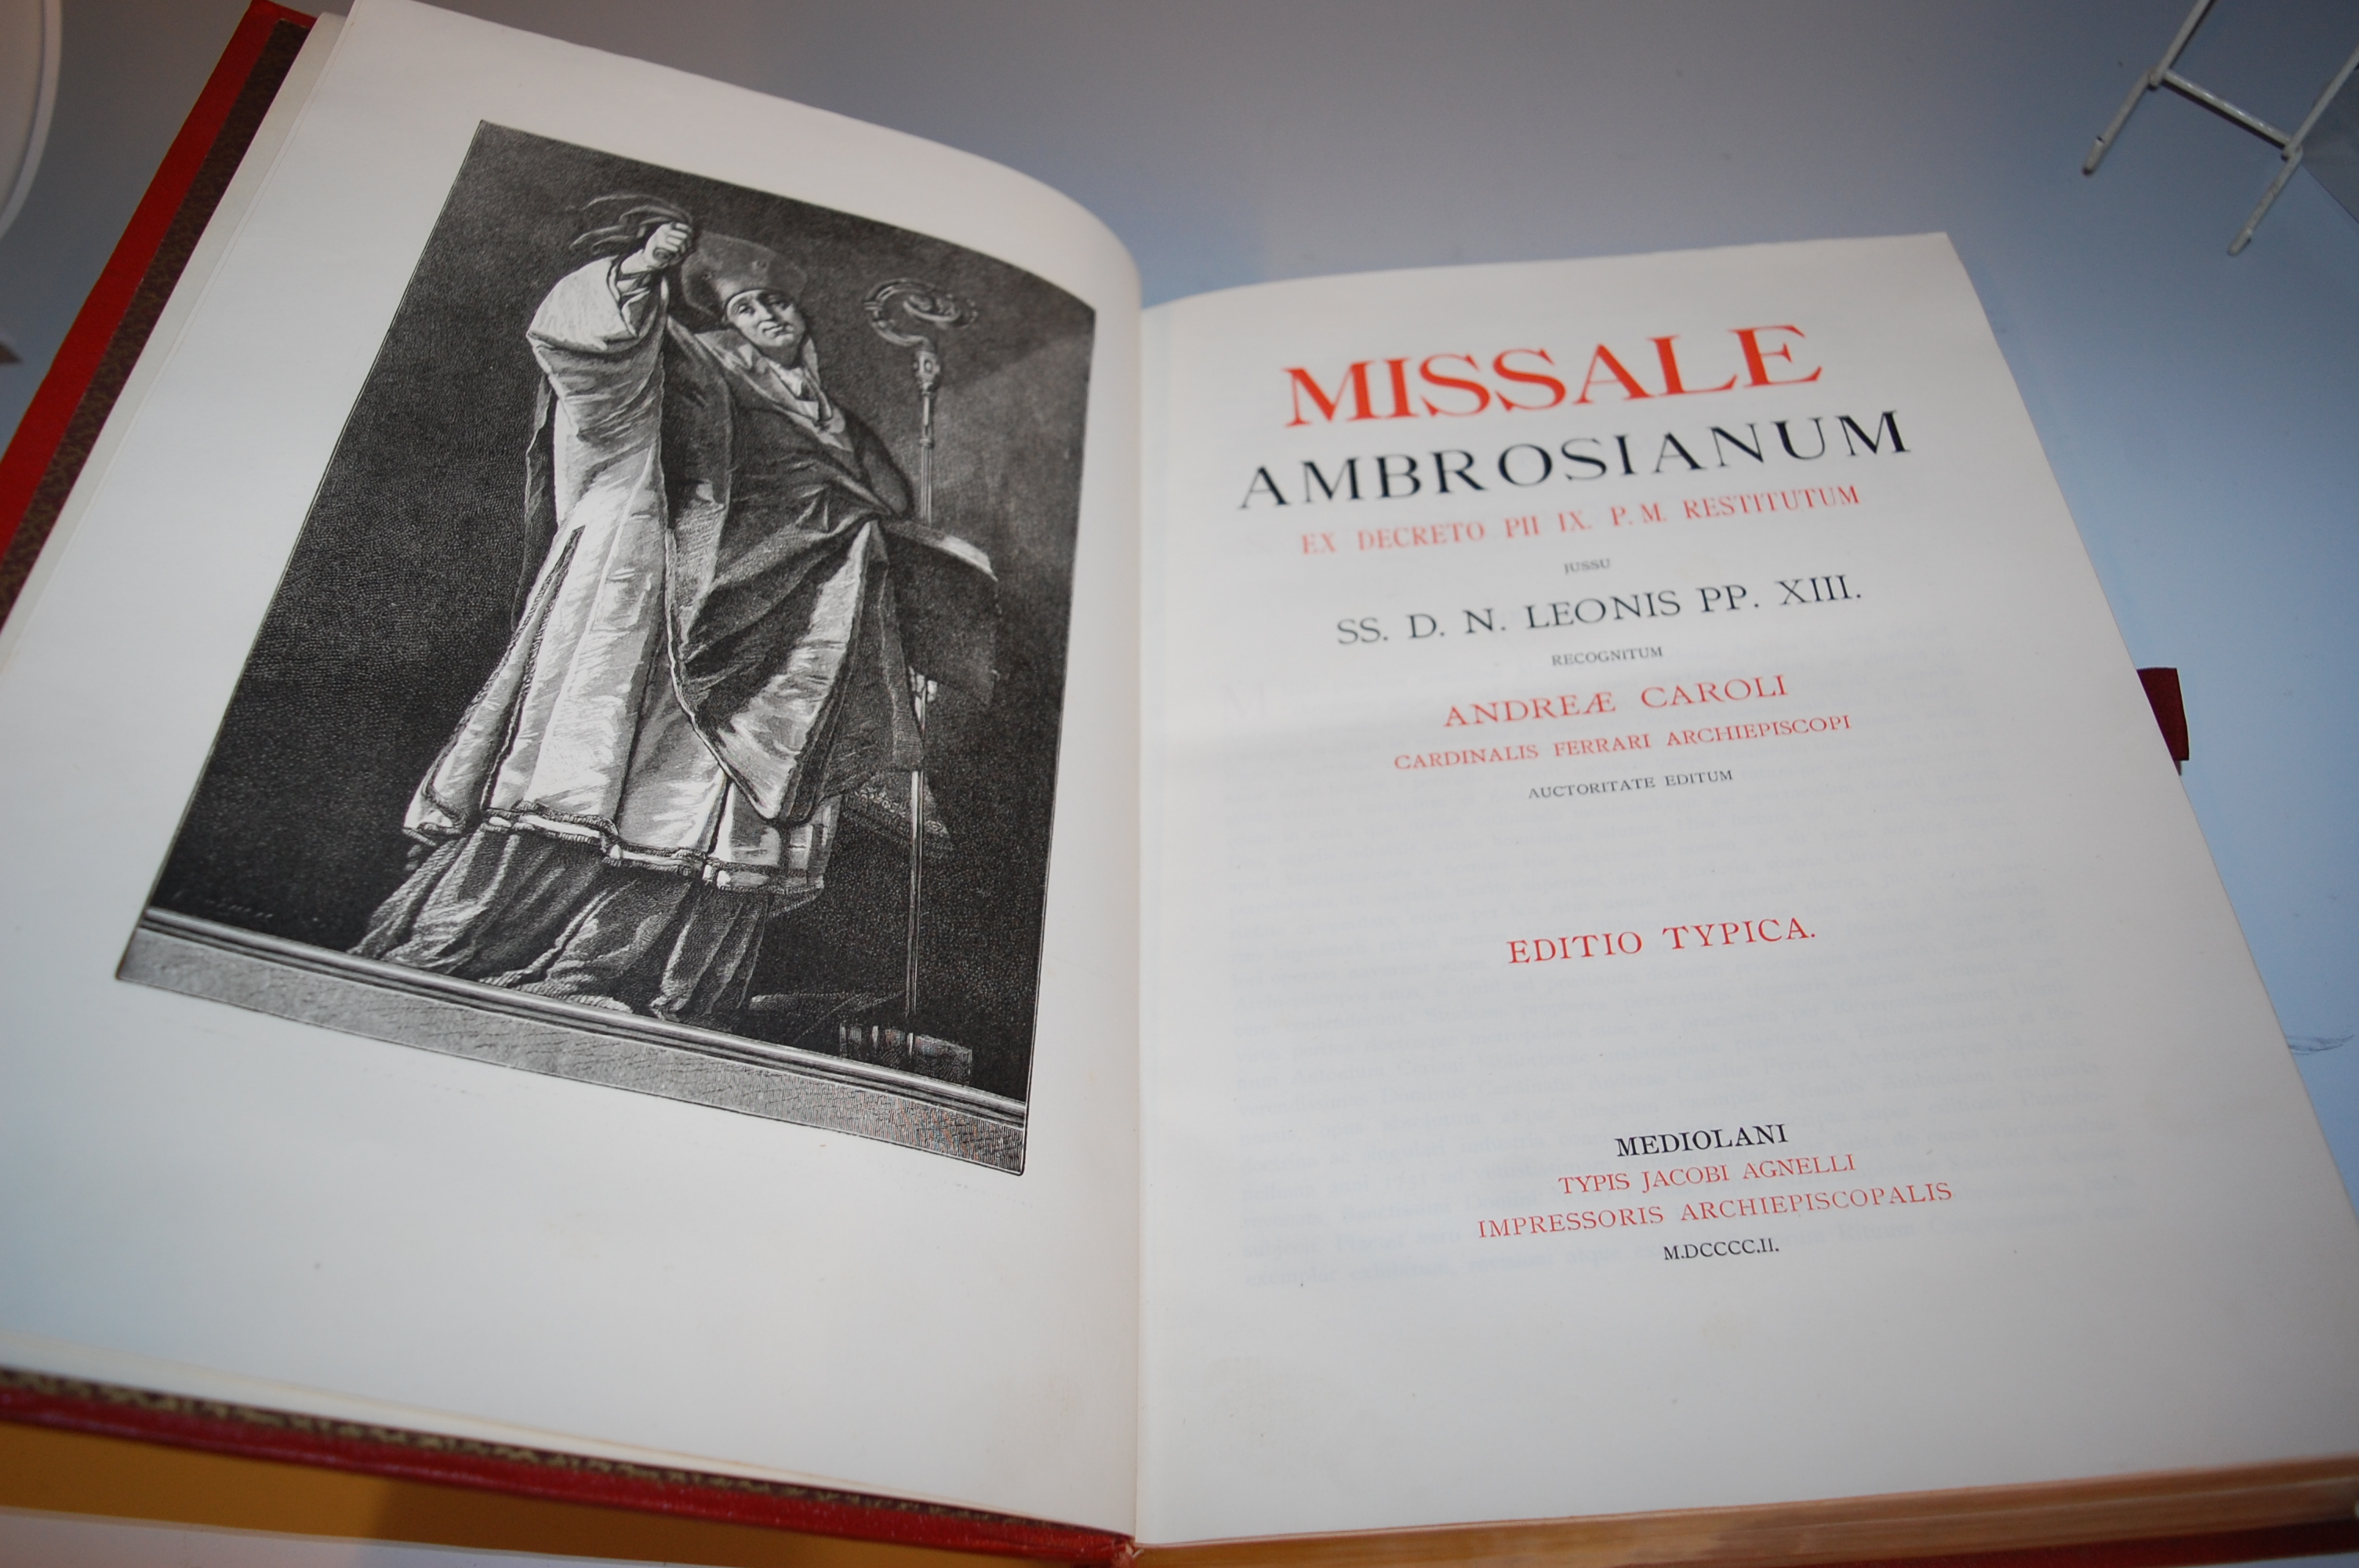 Missale Ambrosianum ex decreto P11 1X PM Restitutum jussu 55 D.N. Leonis P. - Image 3 of 5